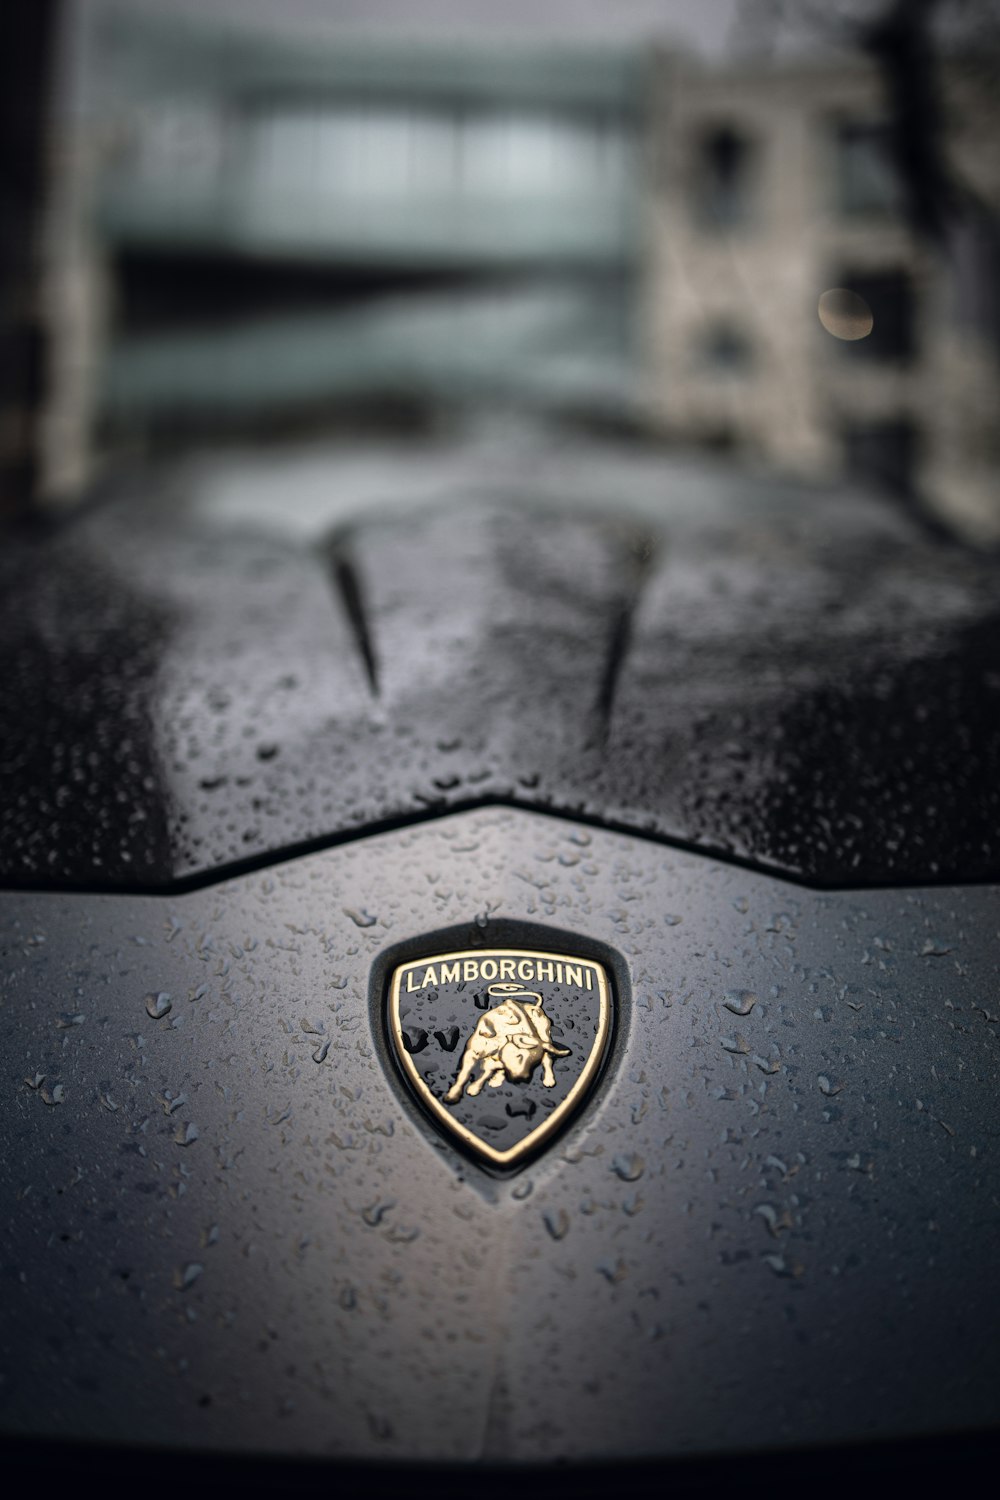 750+ Lamborghini Urus Pictures  Download Free Images on Unsplash